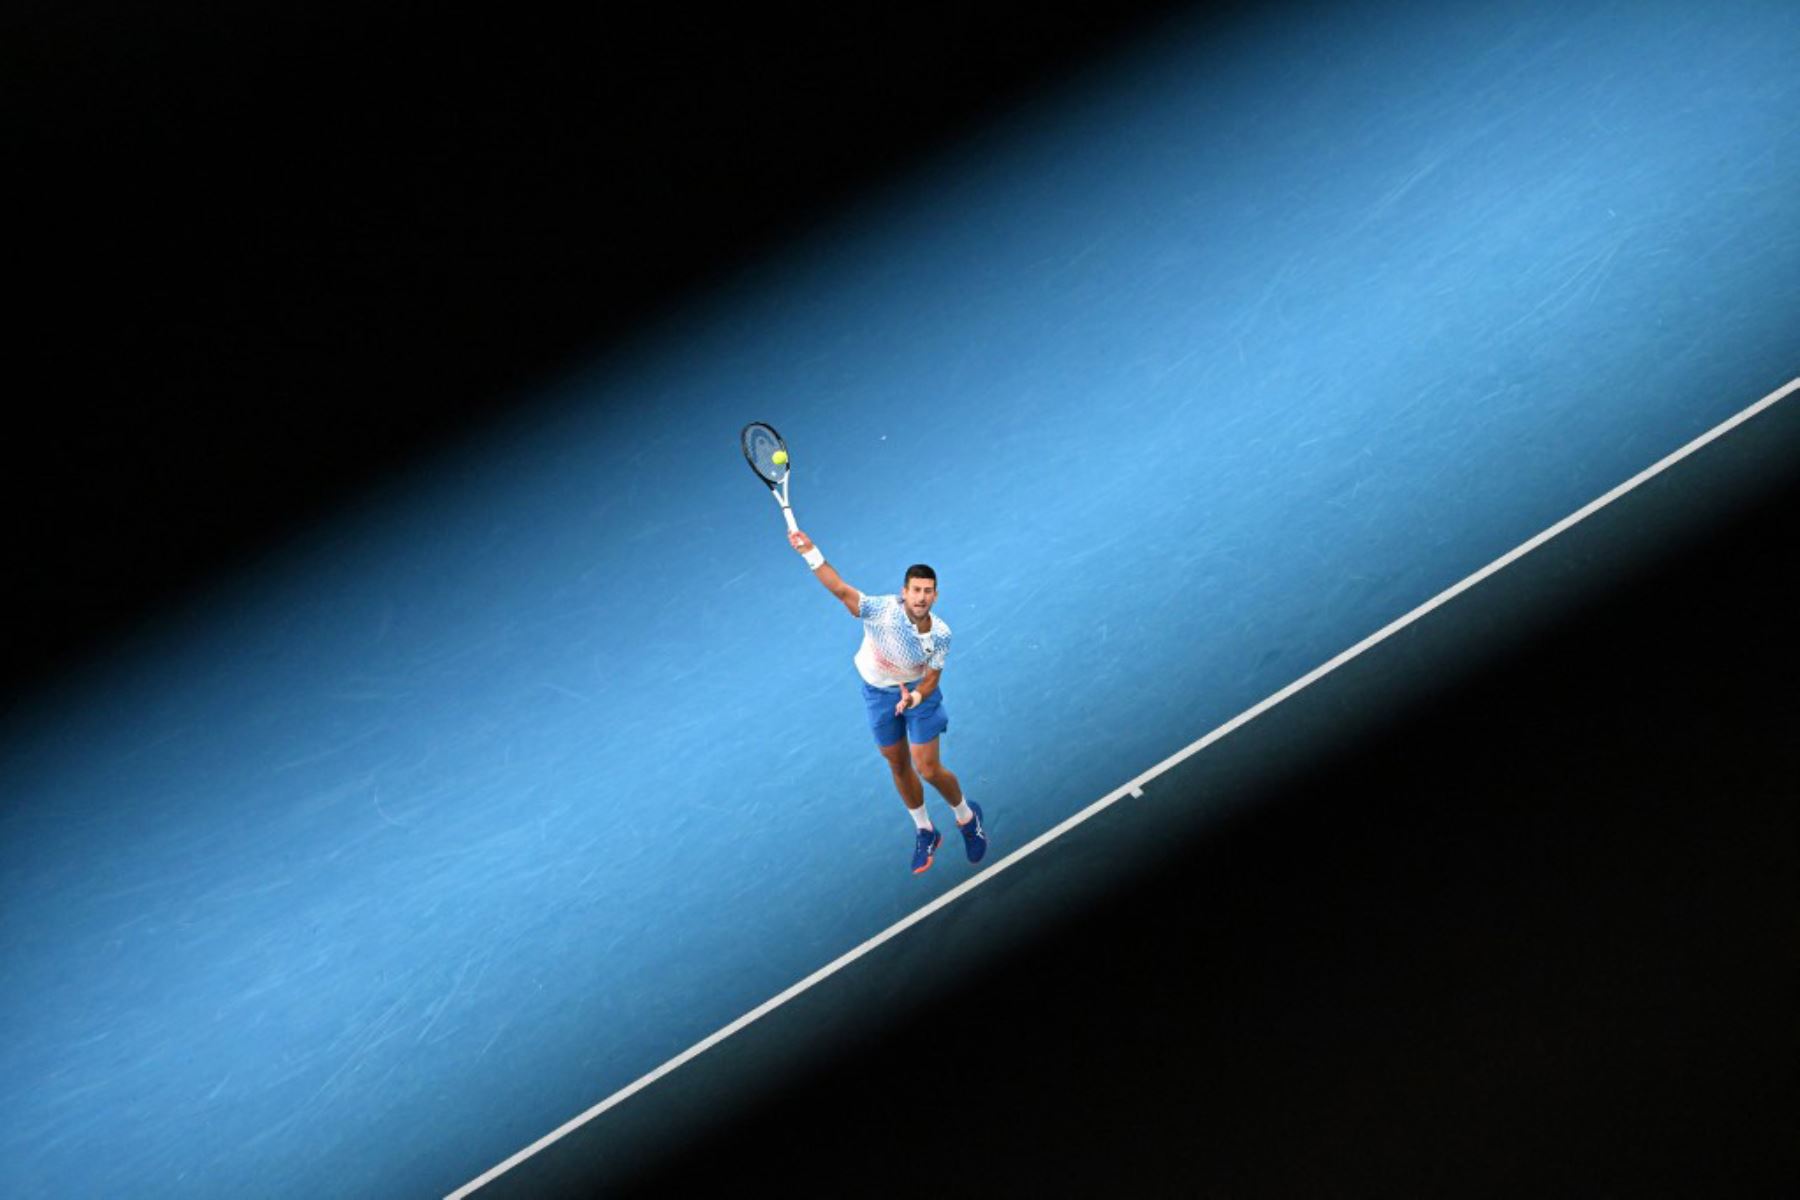 El serbio Novak Djokovic devuelve la pelota contra el griego Stefanos Tsitsipas durante la final de individuales del torneo de tenis del Abierto de Australia en Melbourne. Foto: AFP